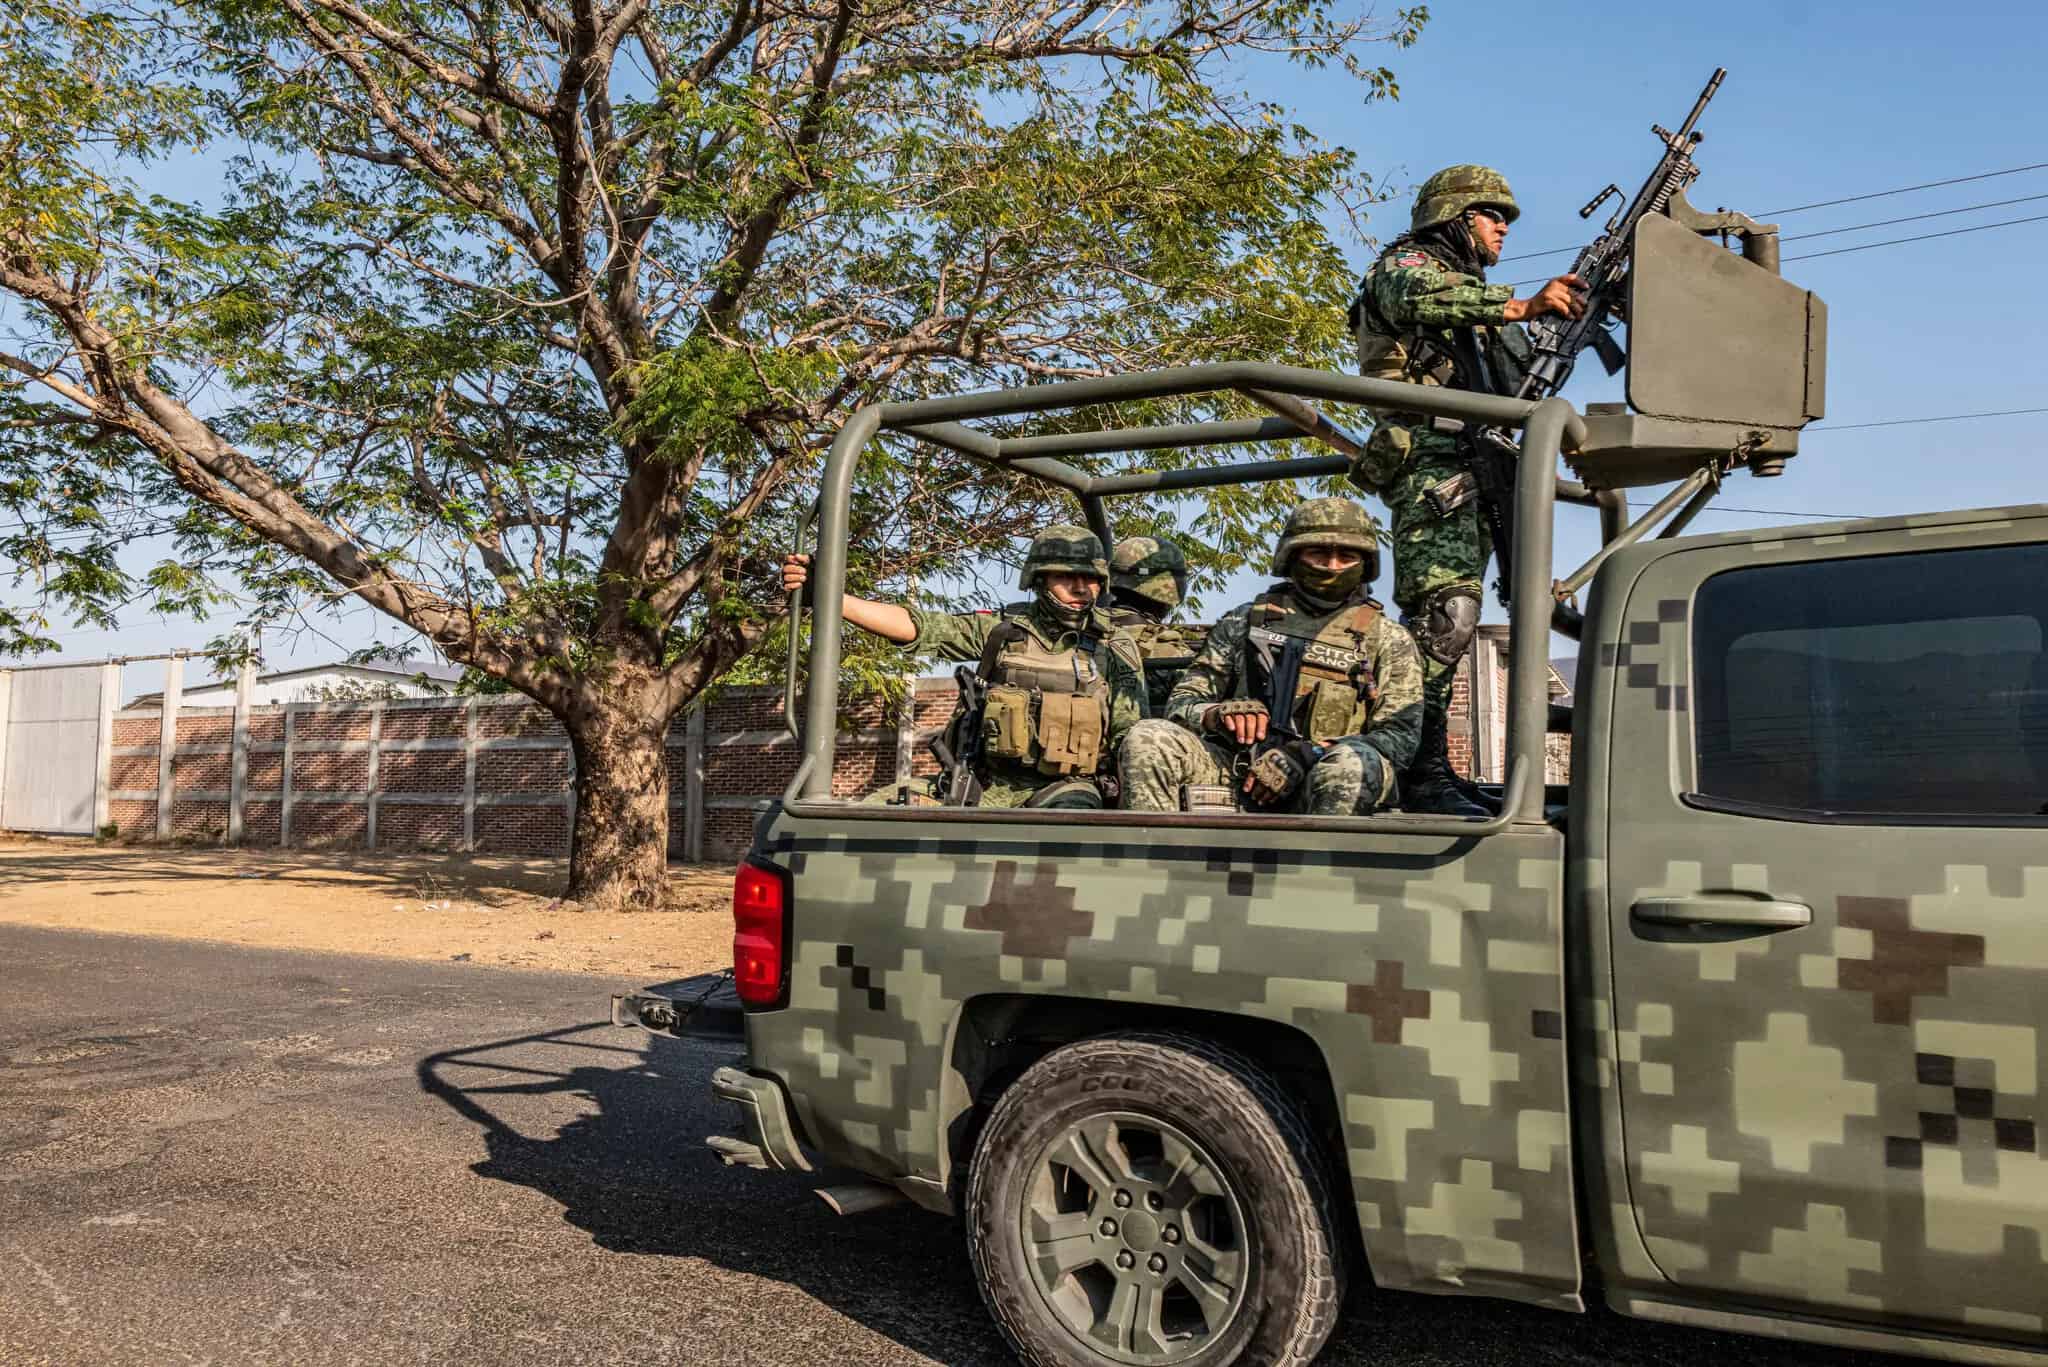 Una unidad militar de patrullaje en Michoacán, México. El ejército mexicano ha usado un programa espía para rastrear a líderes de los cárteles de la droga, pero también lo ha utilizado para espiar a defensores de derechos humanos, según una investigación del Times.Credit...Daniel Berehulak para The New York Times